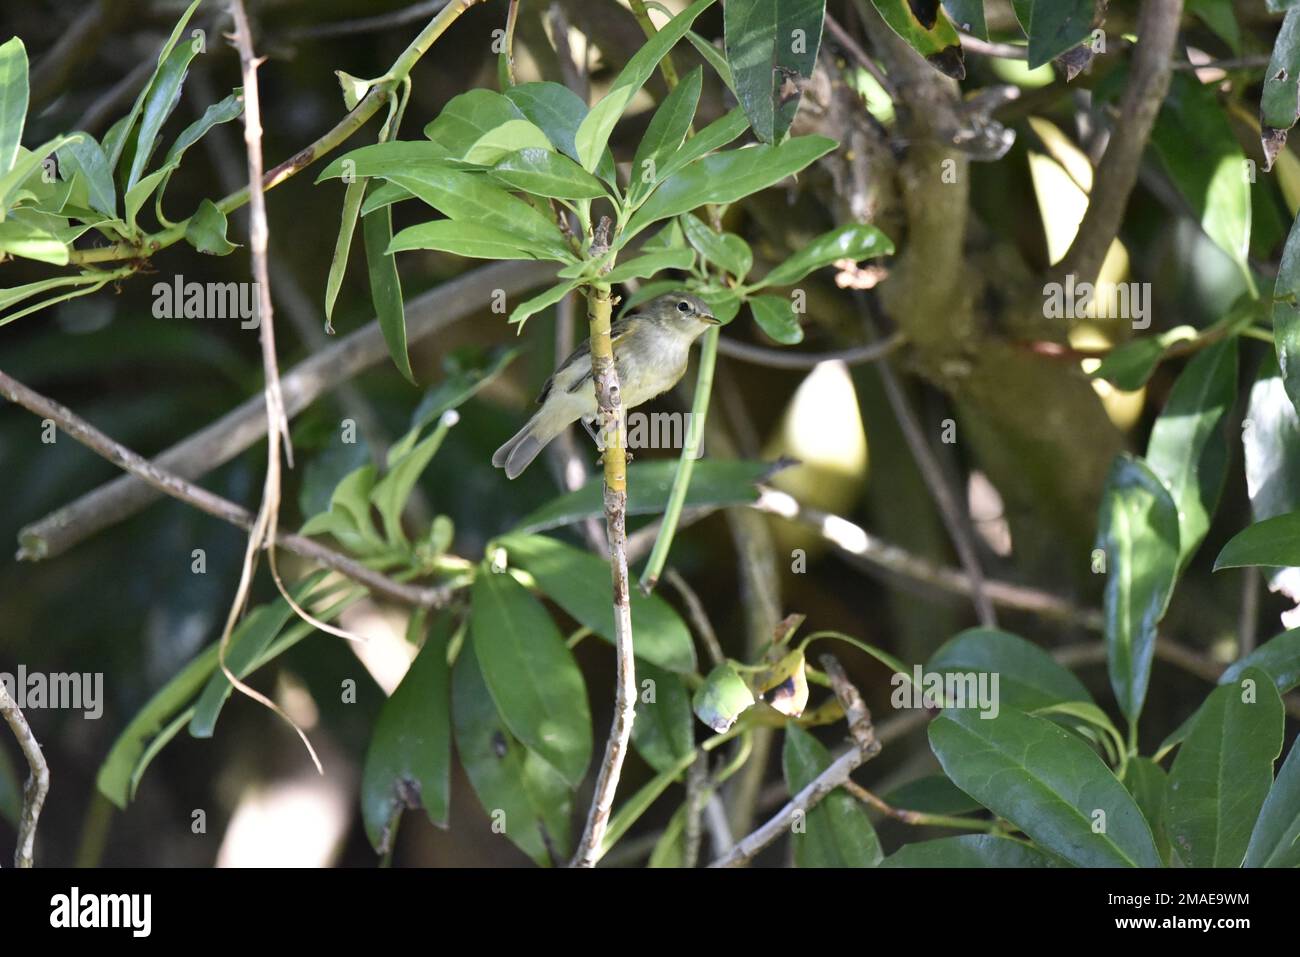 Profil droit et dessous vue d'une Paruline à saule (Phylloscopus trochilus) perchée sur une branche du milieu du champ d'image, regardant à droite au soleil Banque D'Images